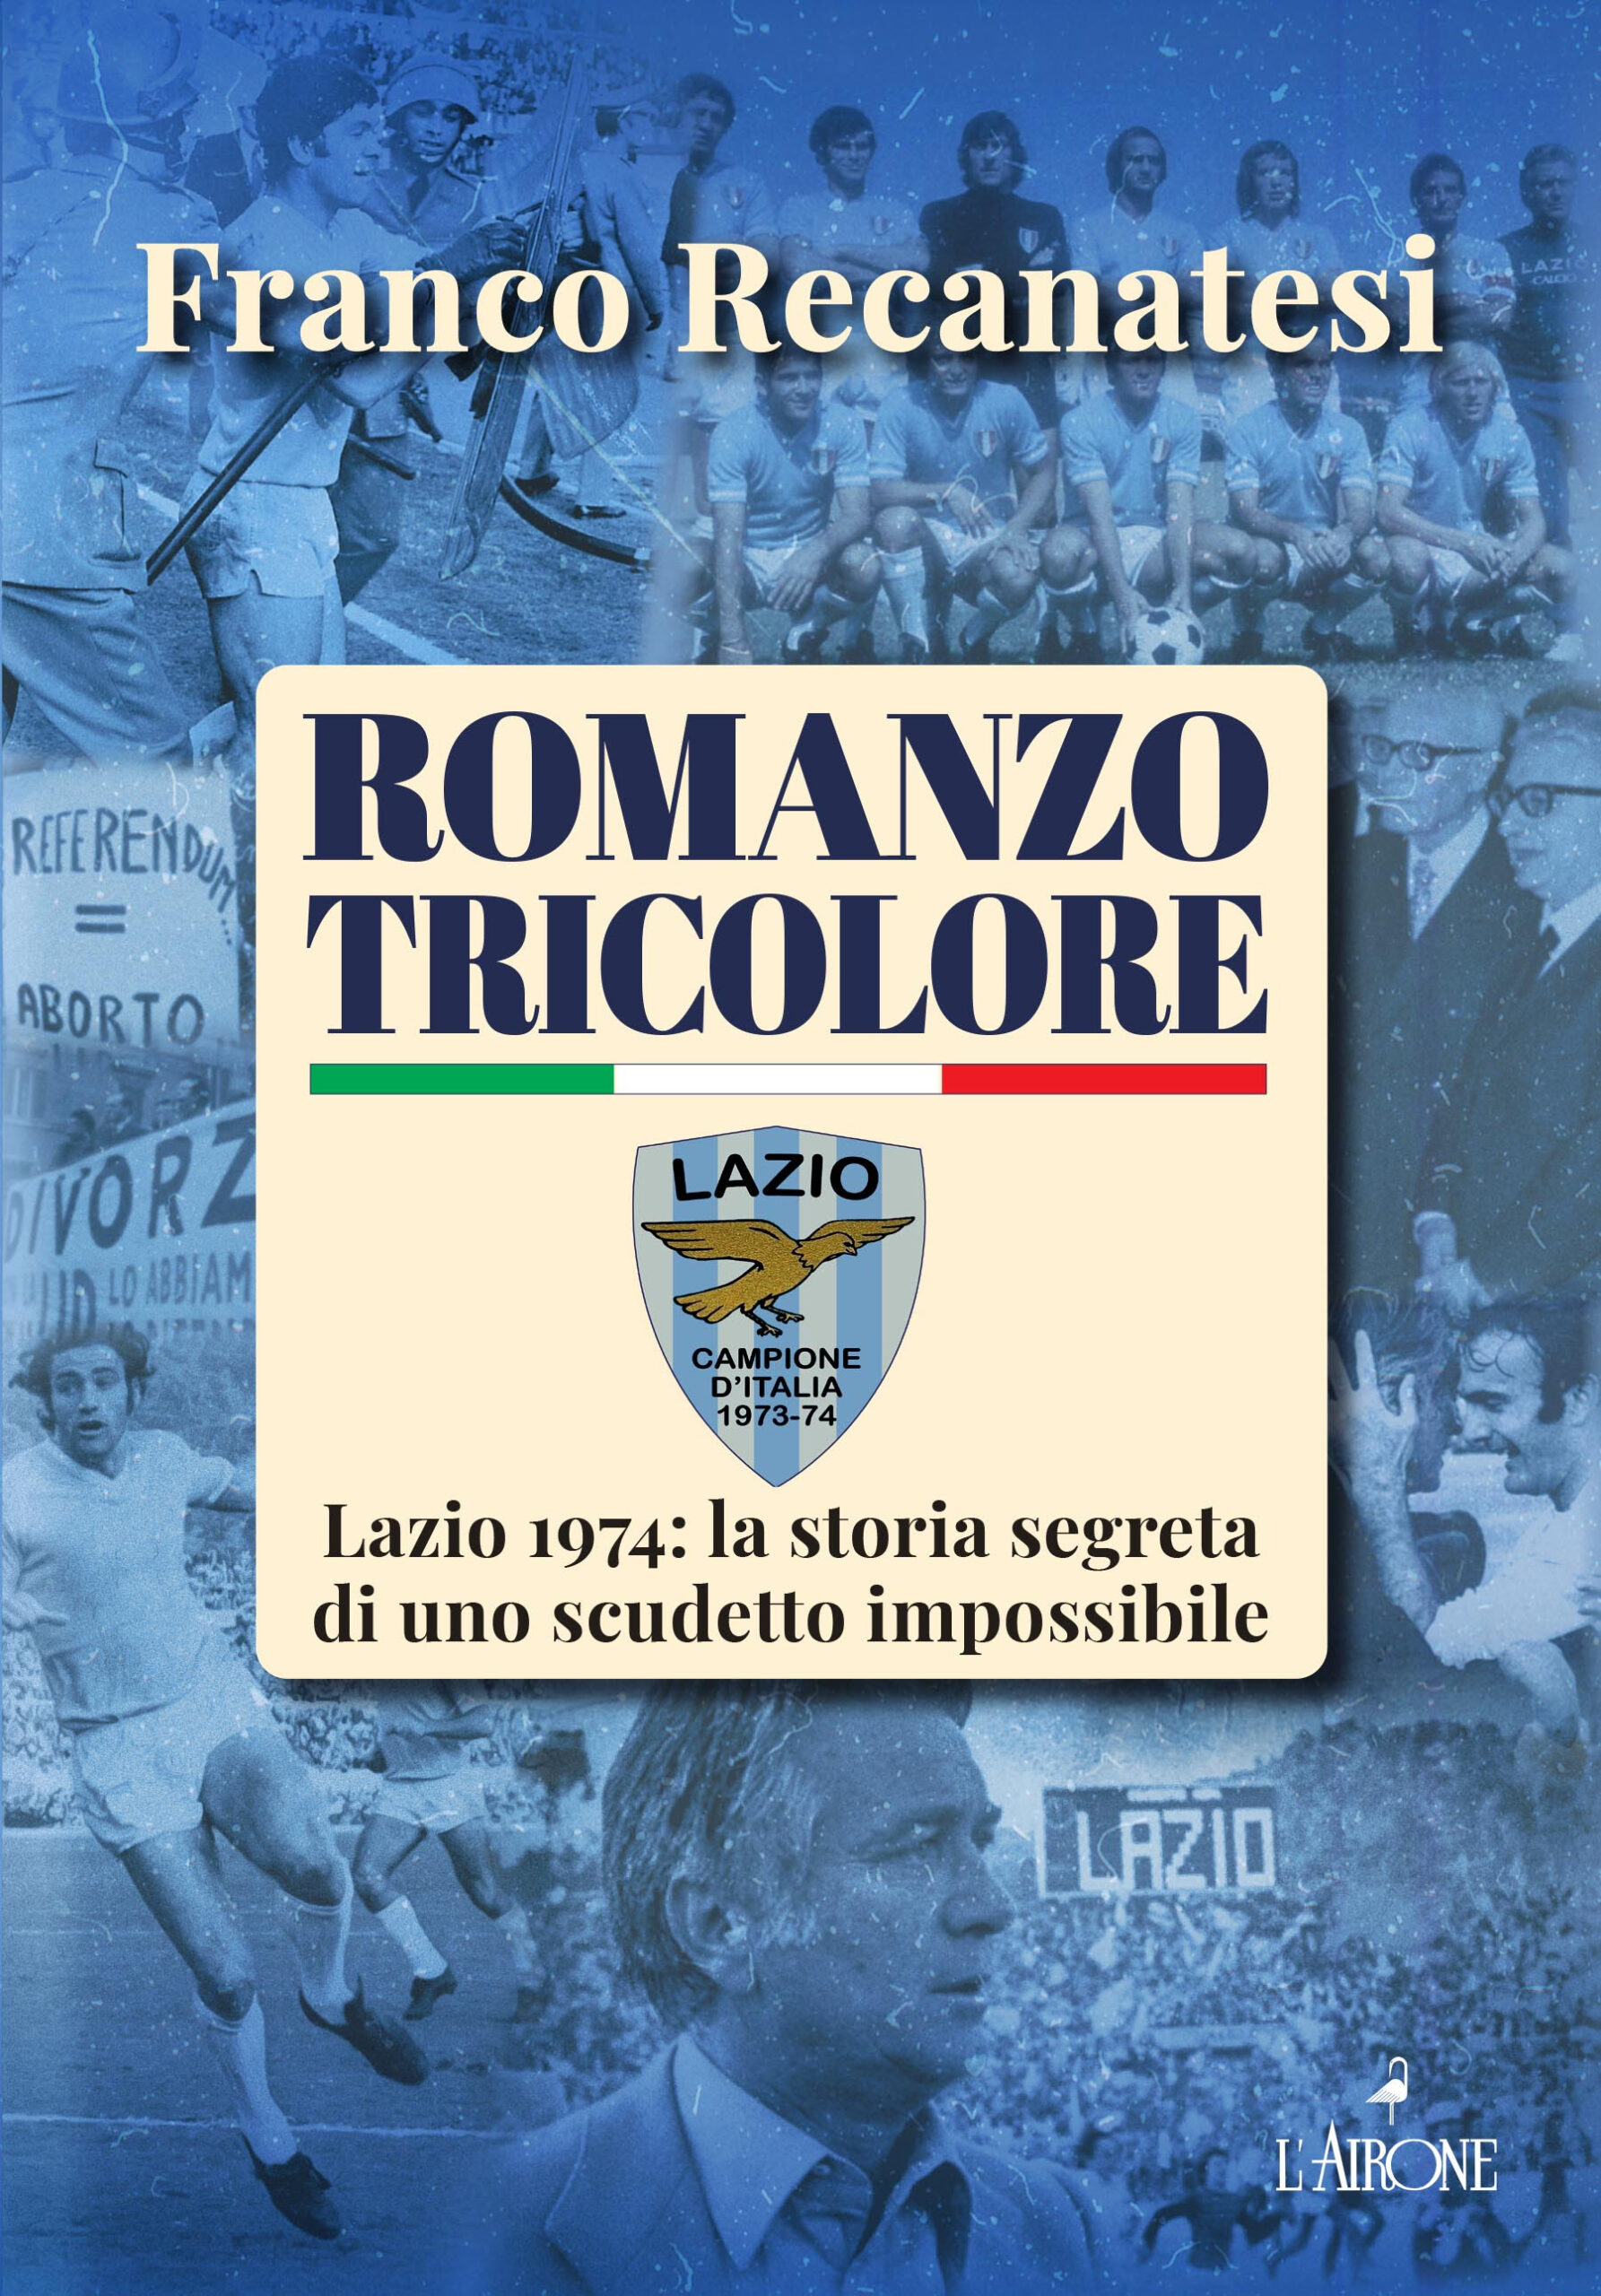 ‘Romanzo tricolore, Lazio 1974: La storia segreta di uno scudetto impossibile’. Il libro di Recanatesi, a 50 anni dal primo scudetto